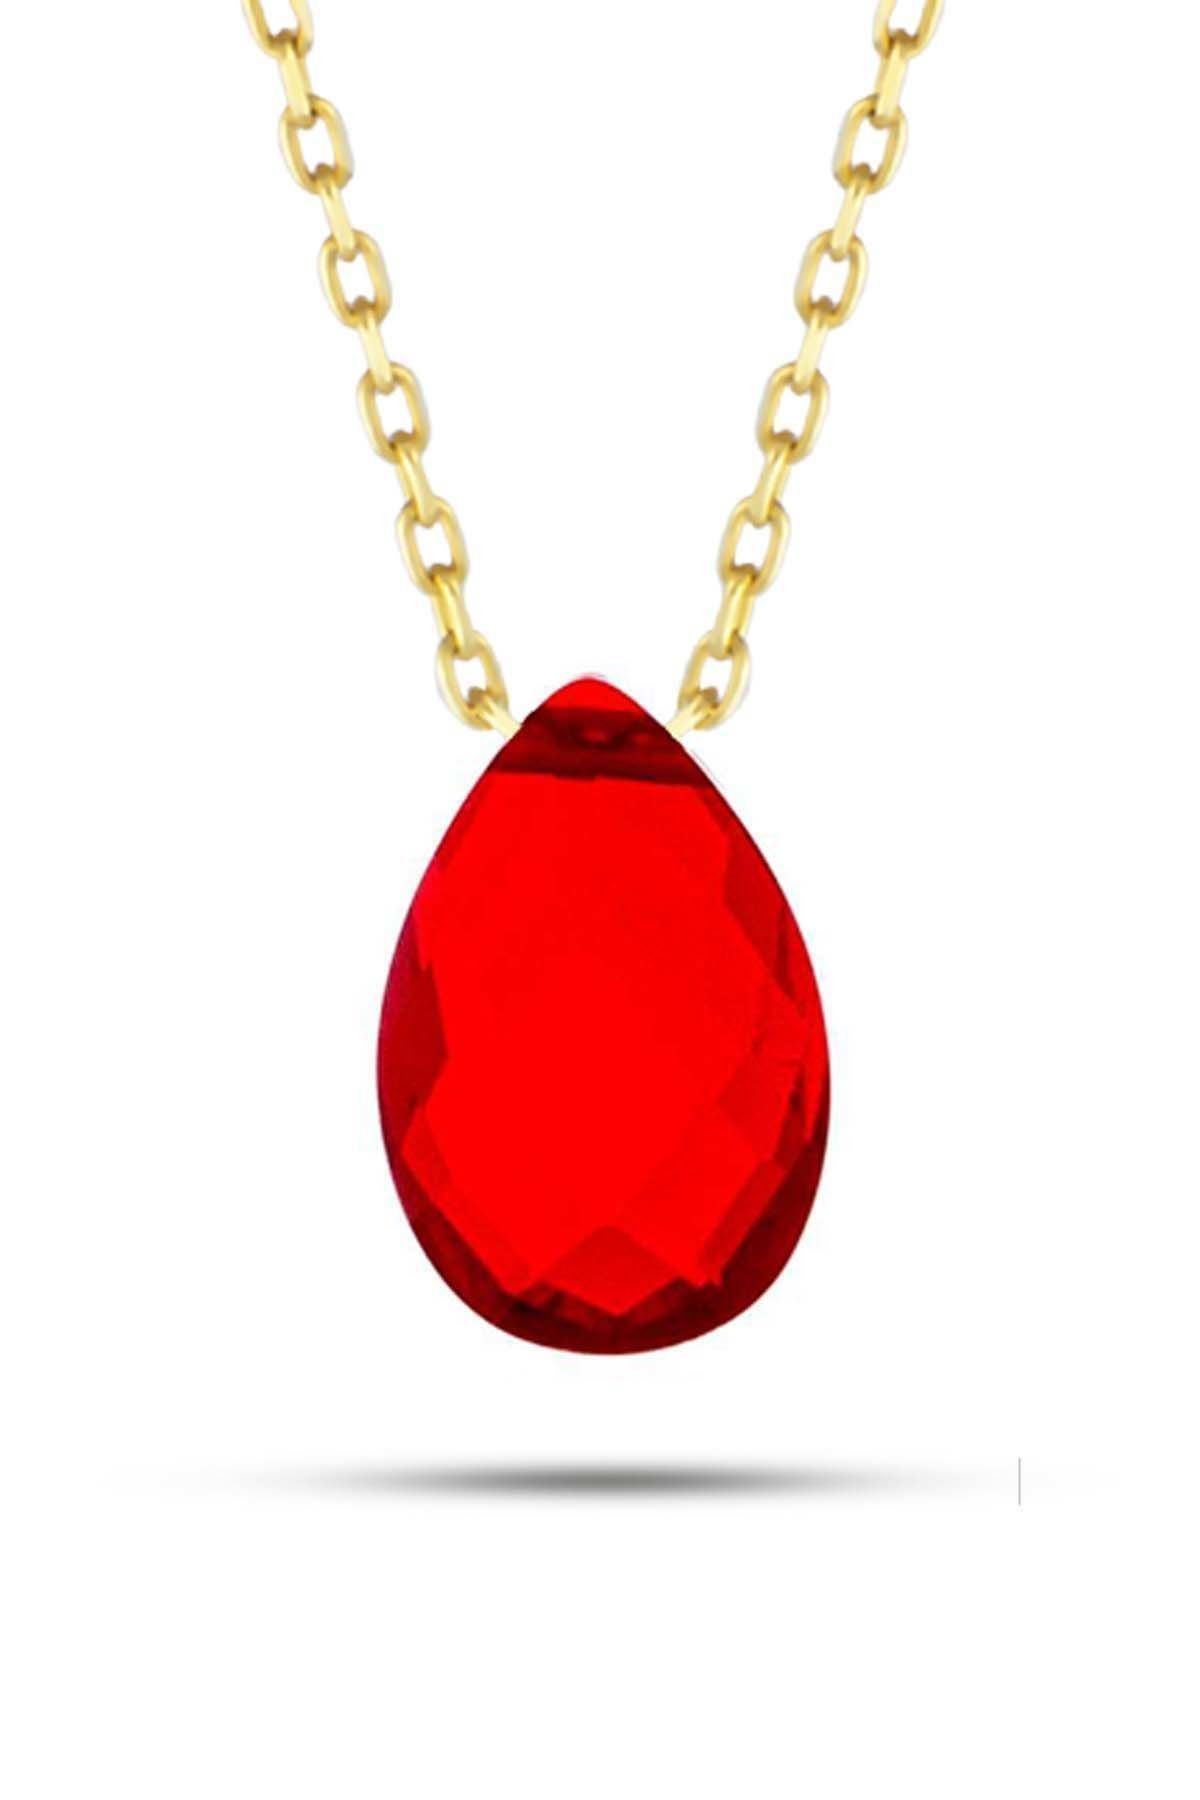 Prenses Pırlanta-Kırmızı Damla Doğal Taş Altın Kolye Modeli 14 Ayar Altın